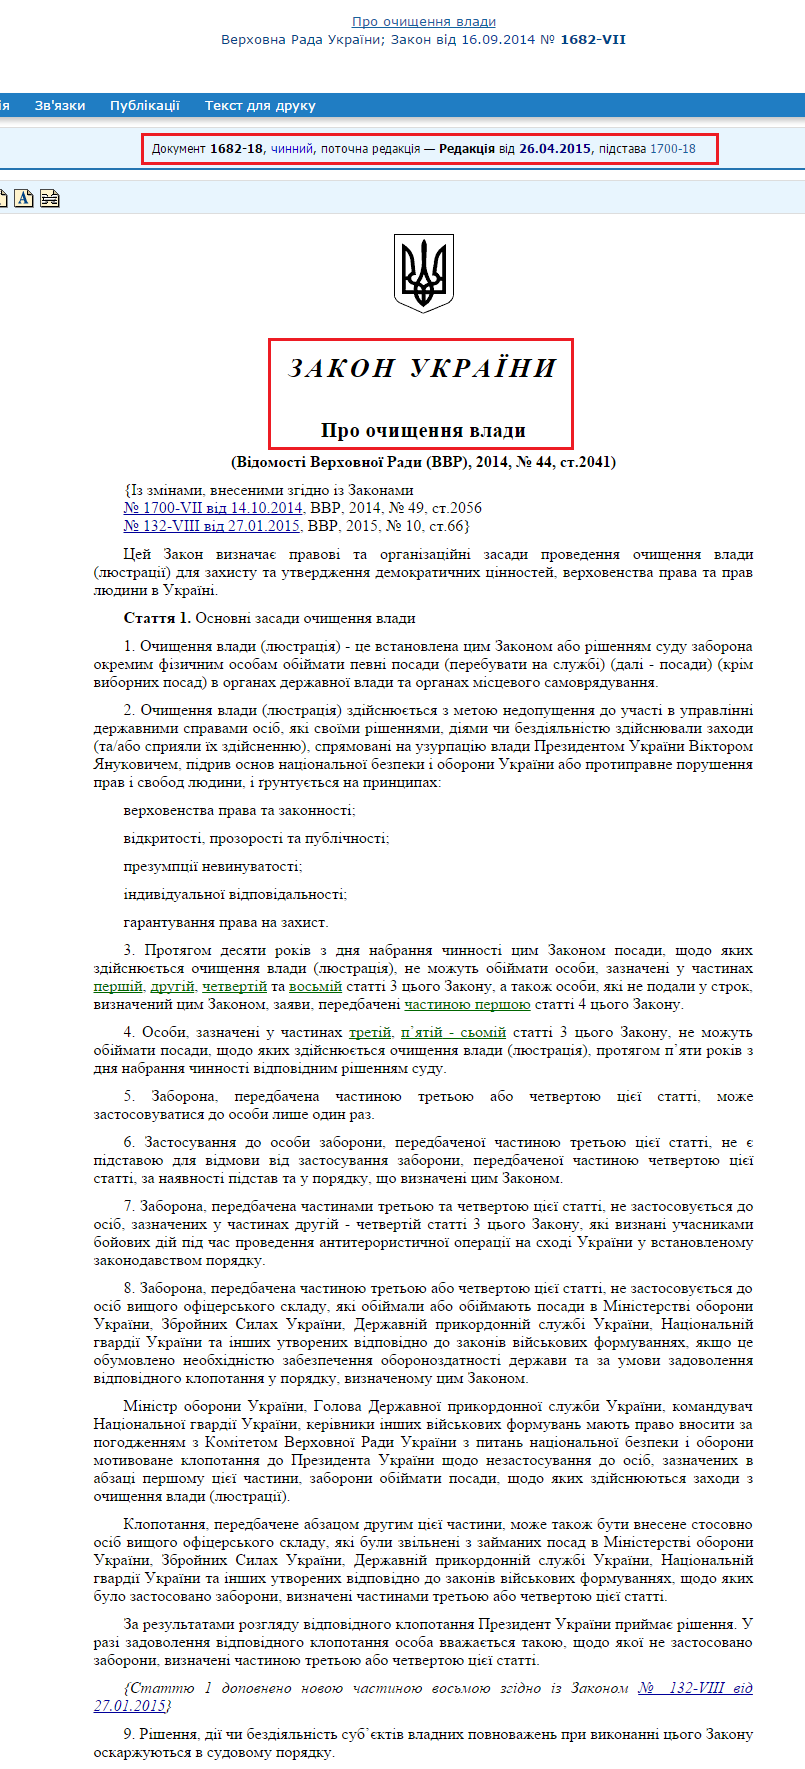 http://zakon3.rada.gov.ua/laws/show/1682-18